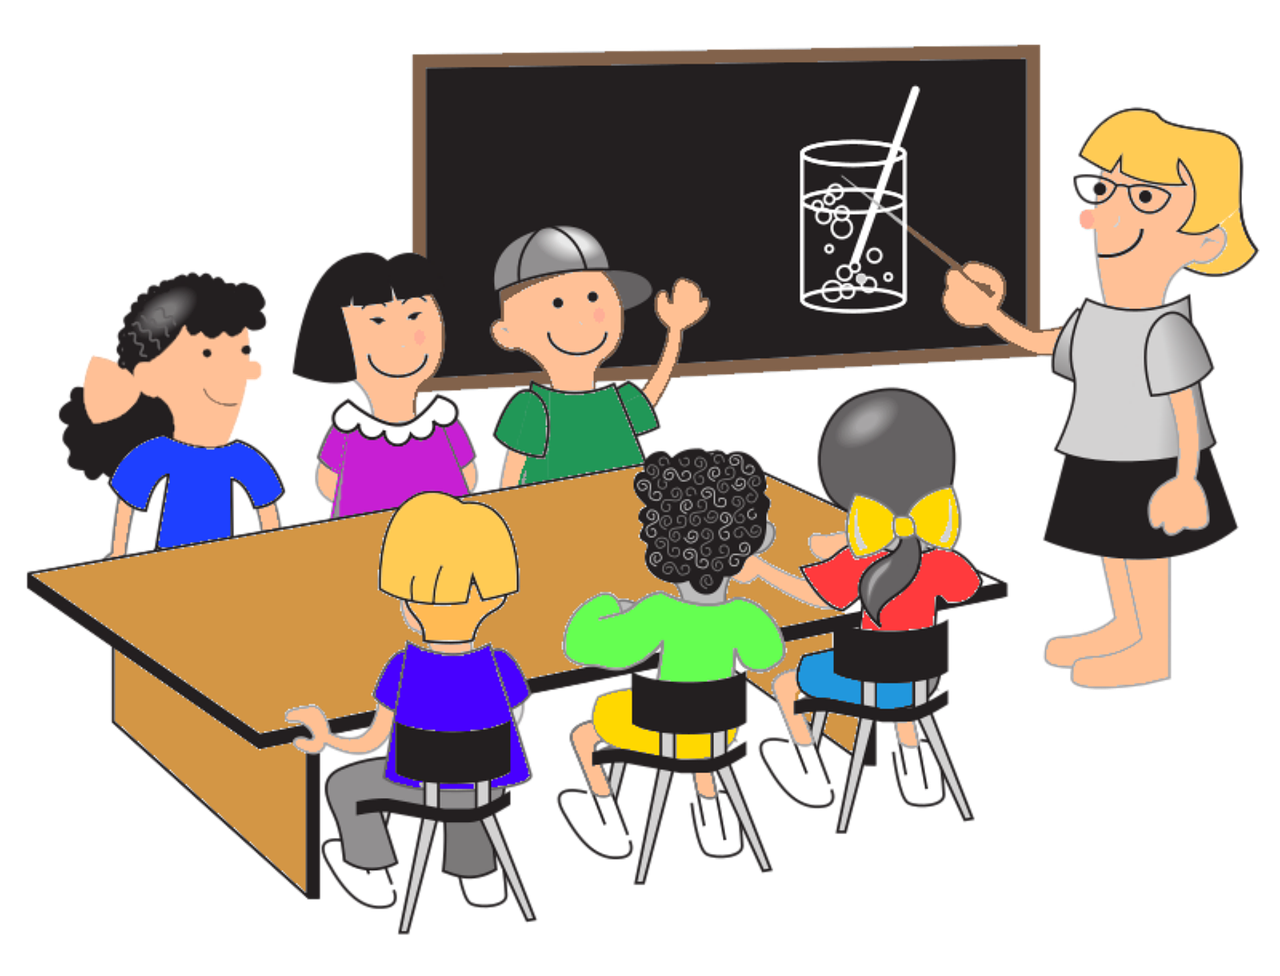 Dibujo de un salón de clases donde una maesra señala el pizarrón y niños frente a ella, en torno a una mesa, le atienden.